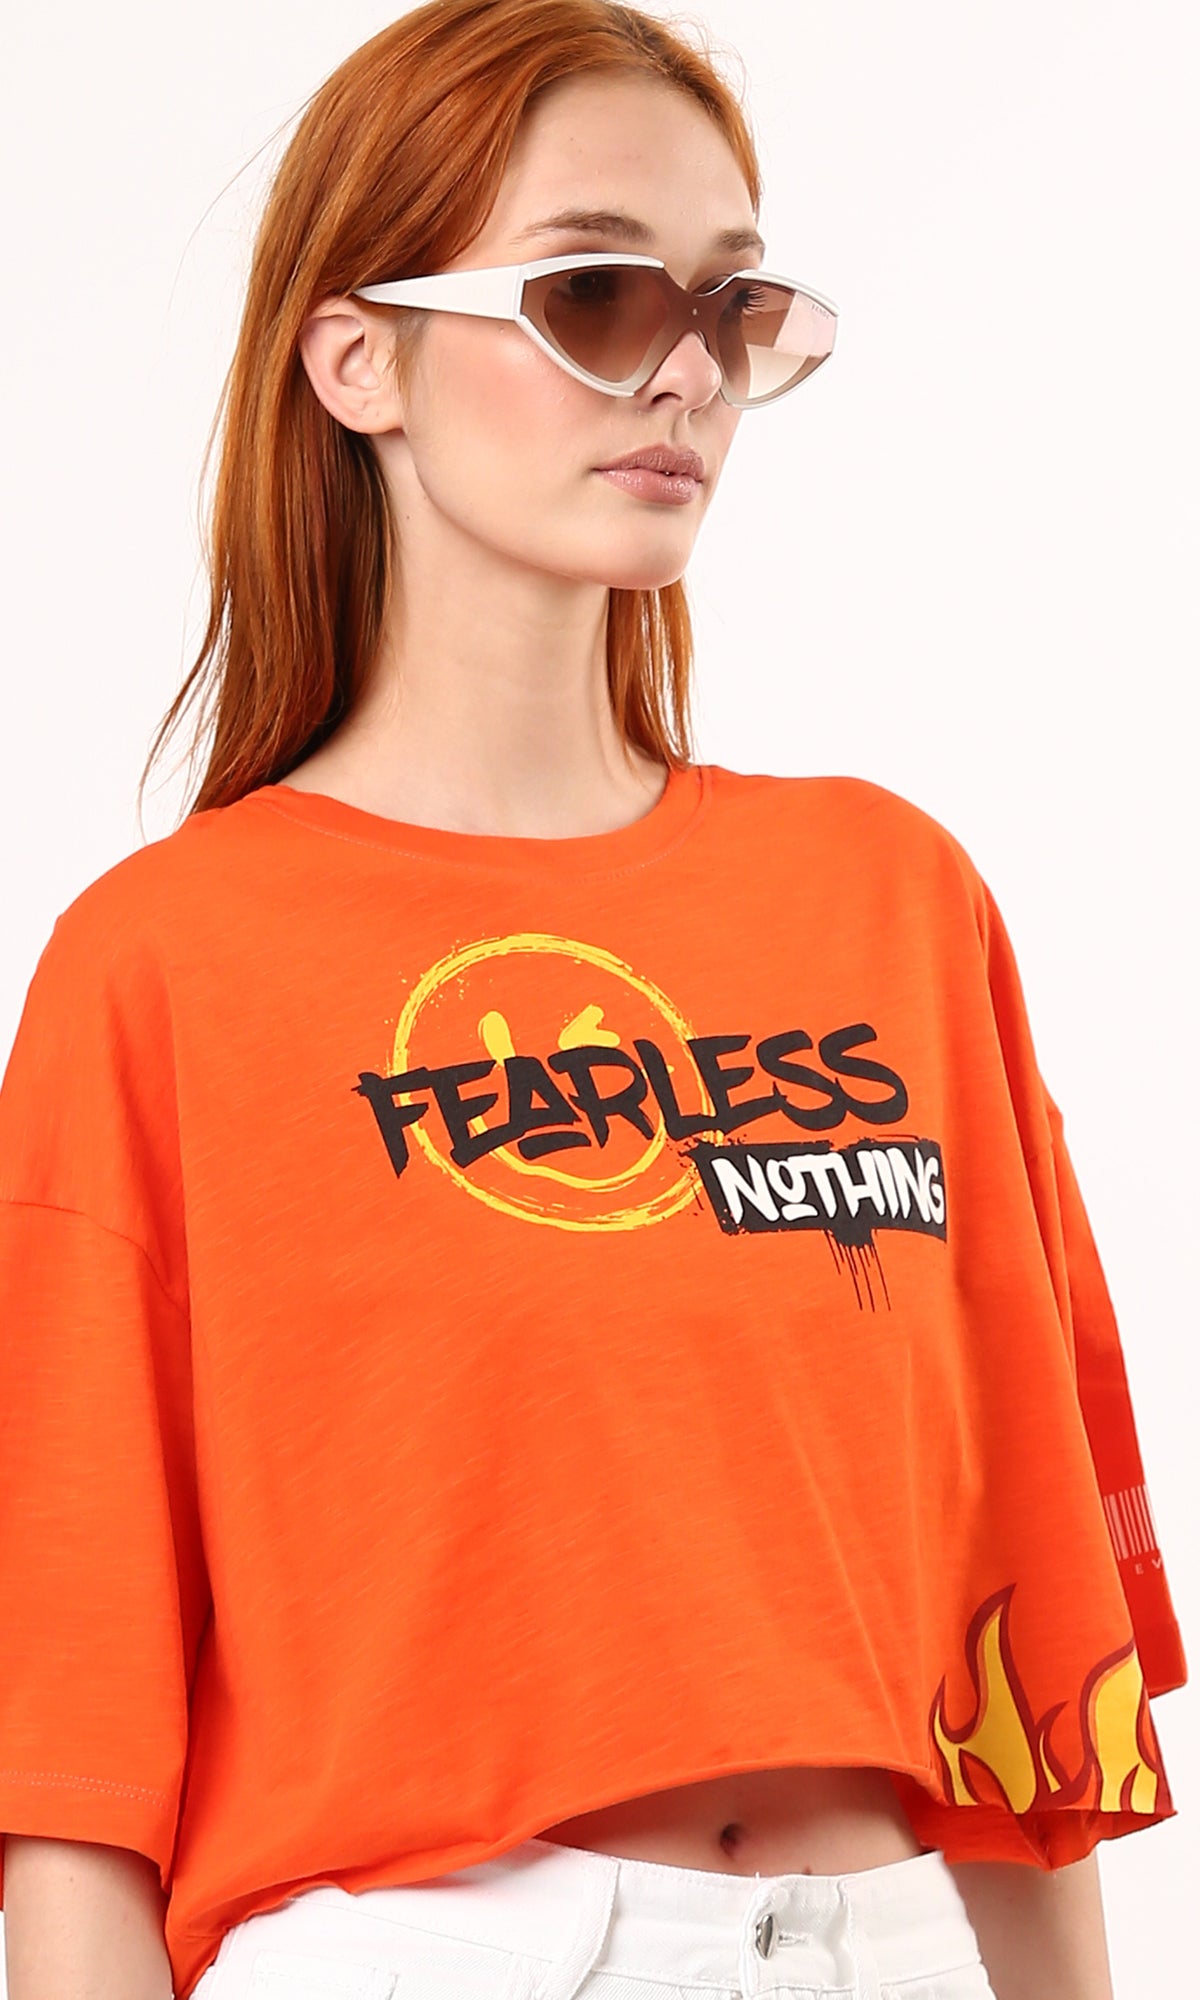 O180448 Printed "Fearless Nothing" Printed Loose Tee - Hot Orange